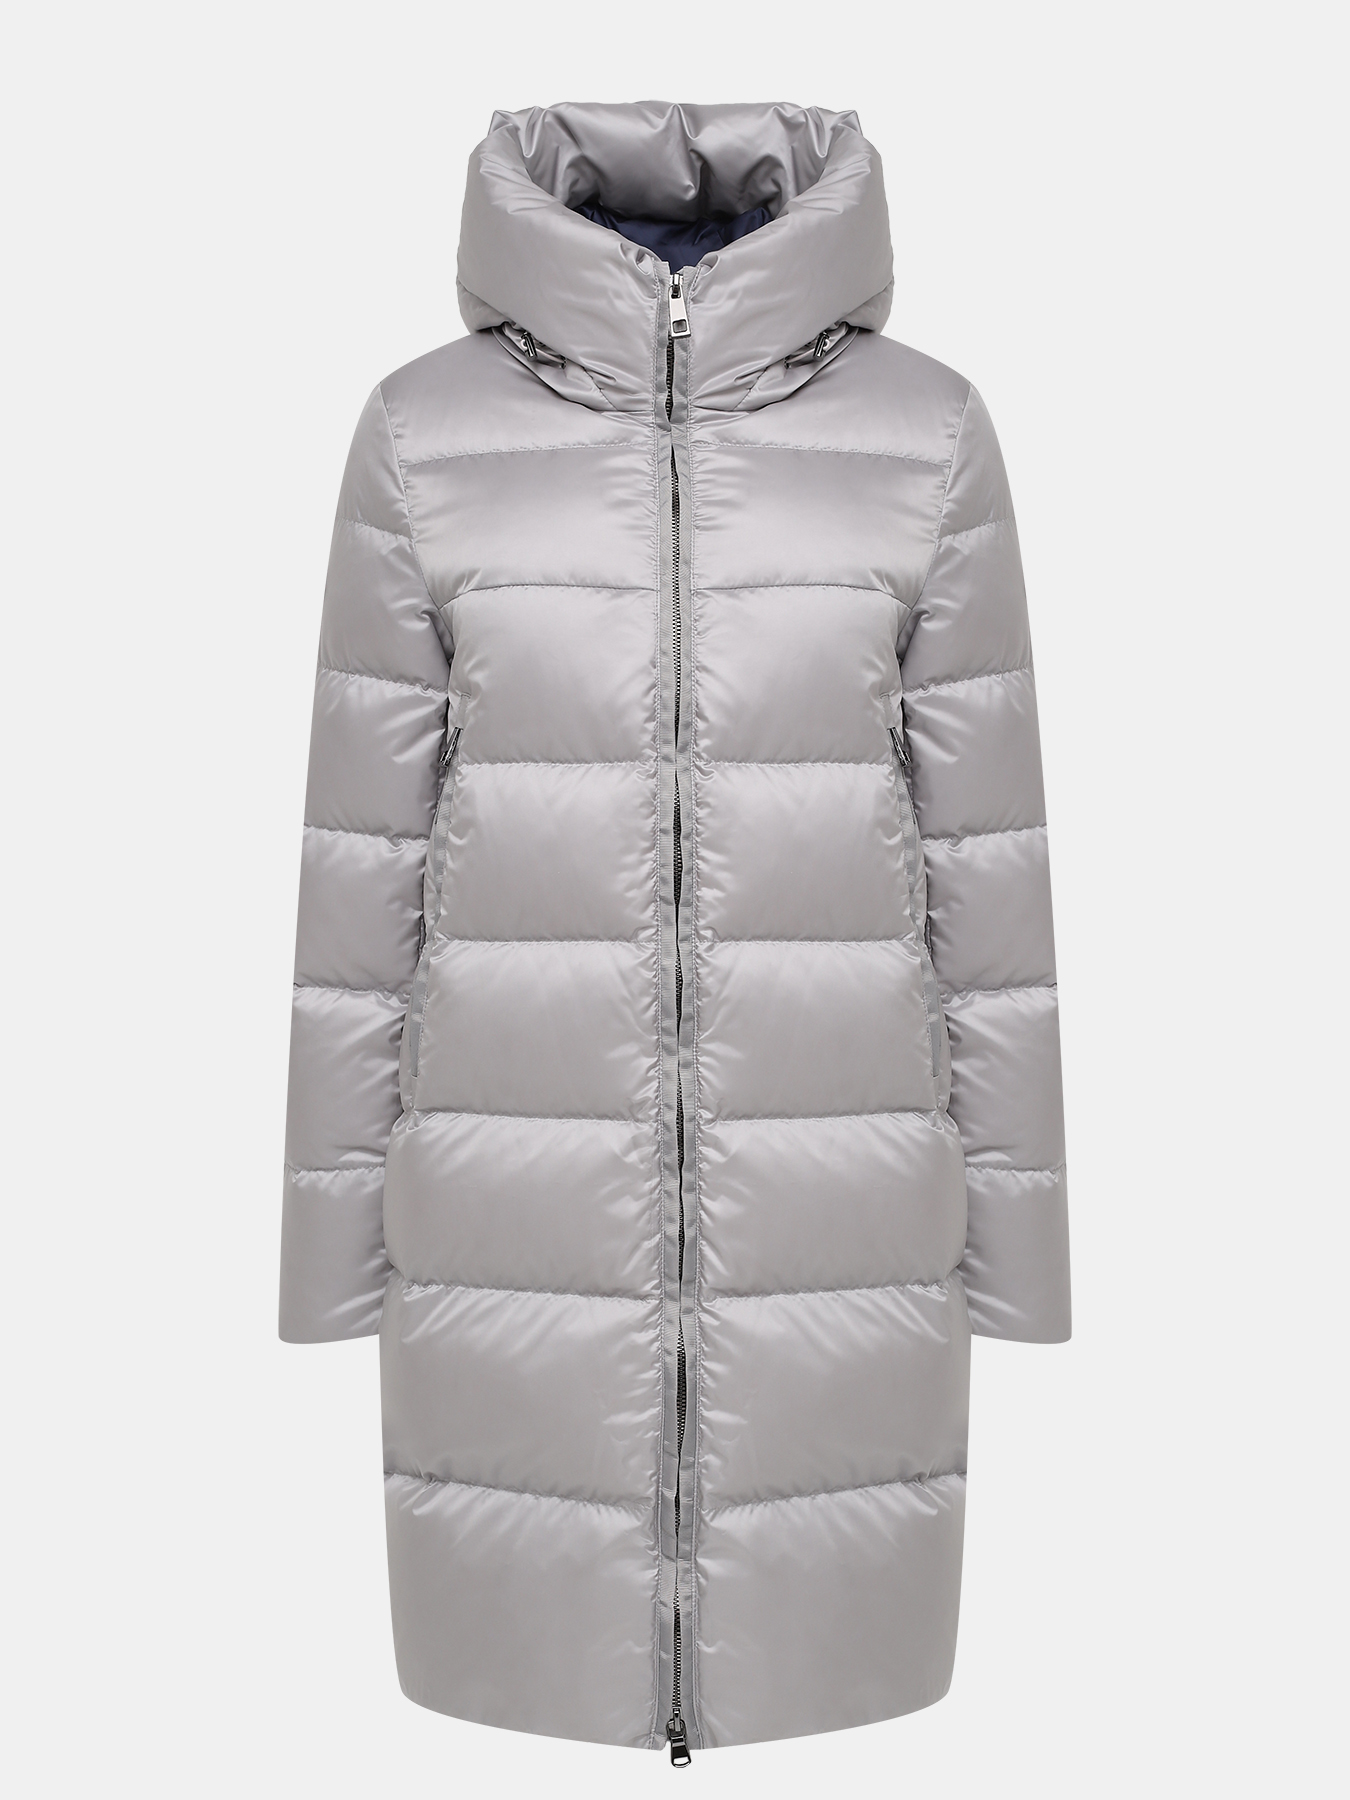 Пальто зимнее AVI 433618-020, цвет серый, размер 44